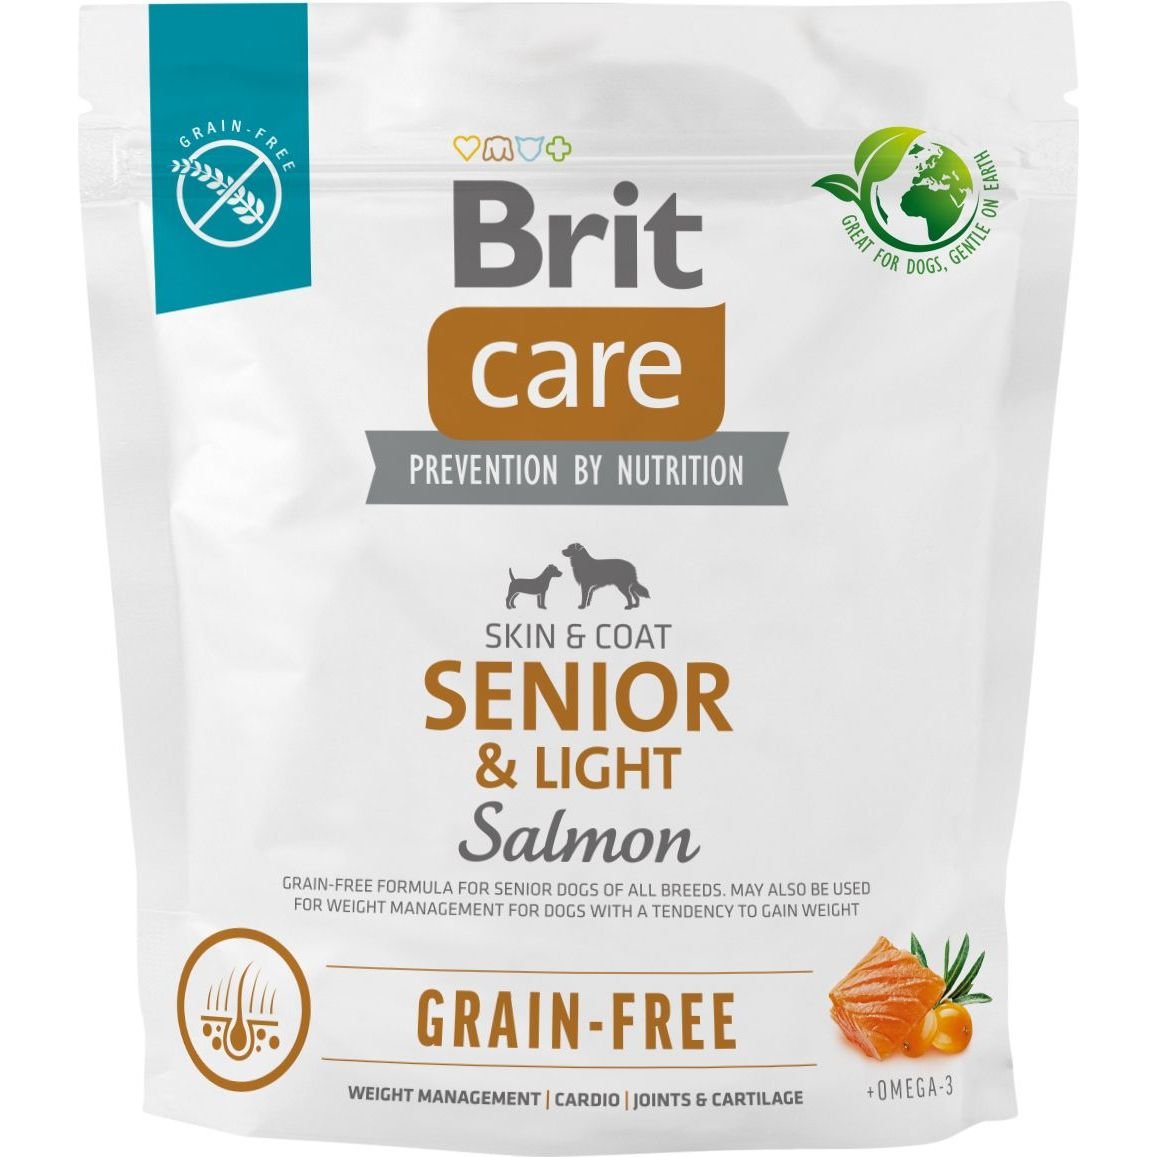 Сухой беззерновой корм для стареющих собак Brit Care Dog Grain-free Senior&Light, с лососем, 1 кг - фото 1